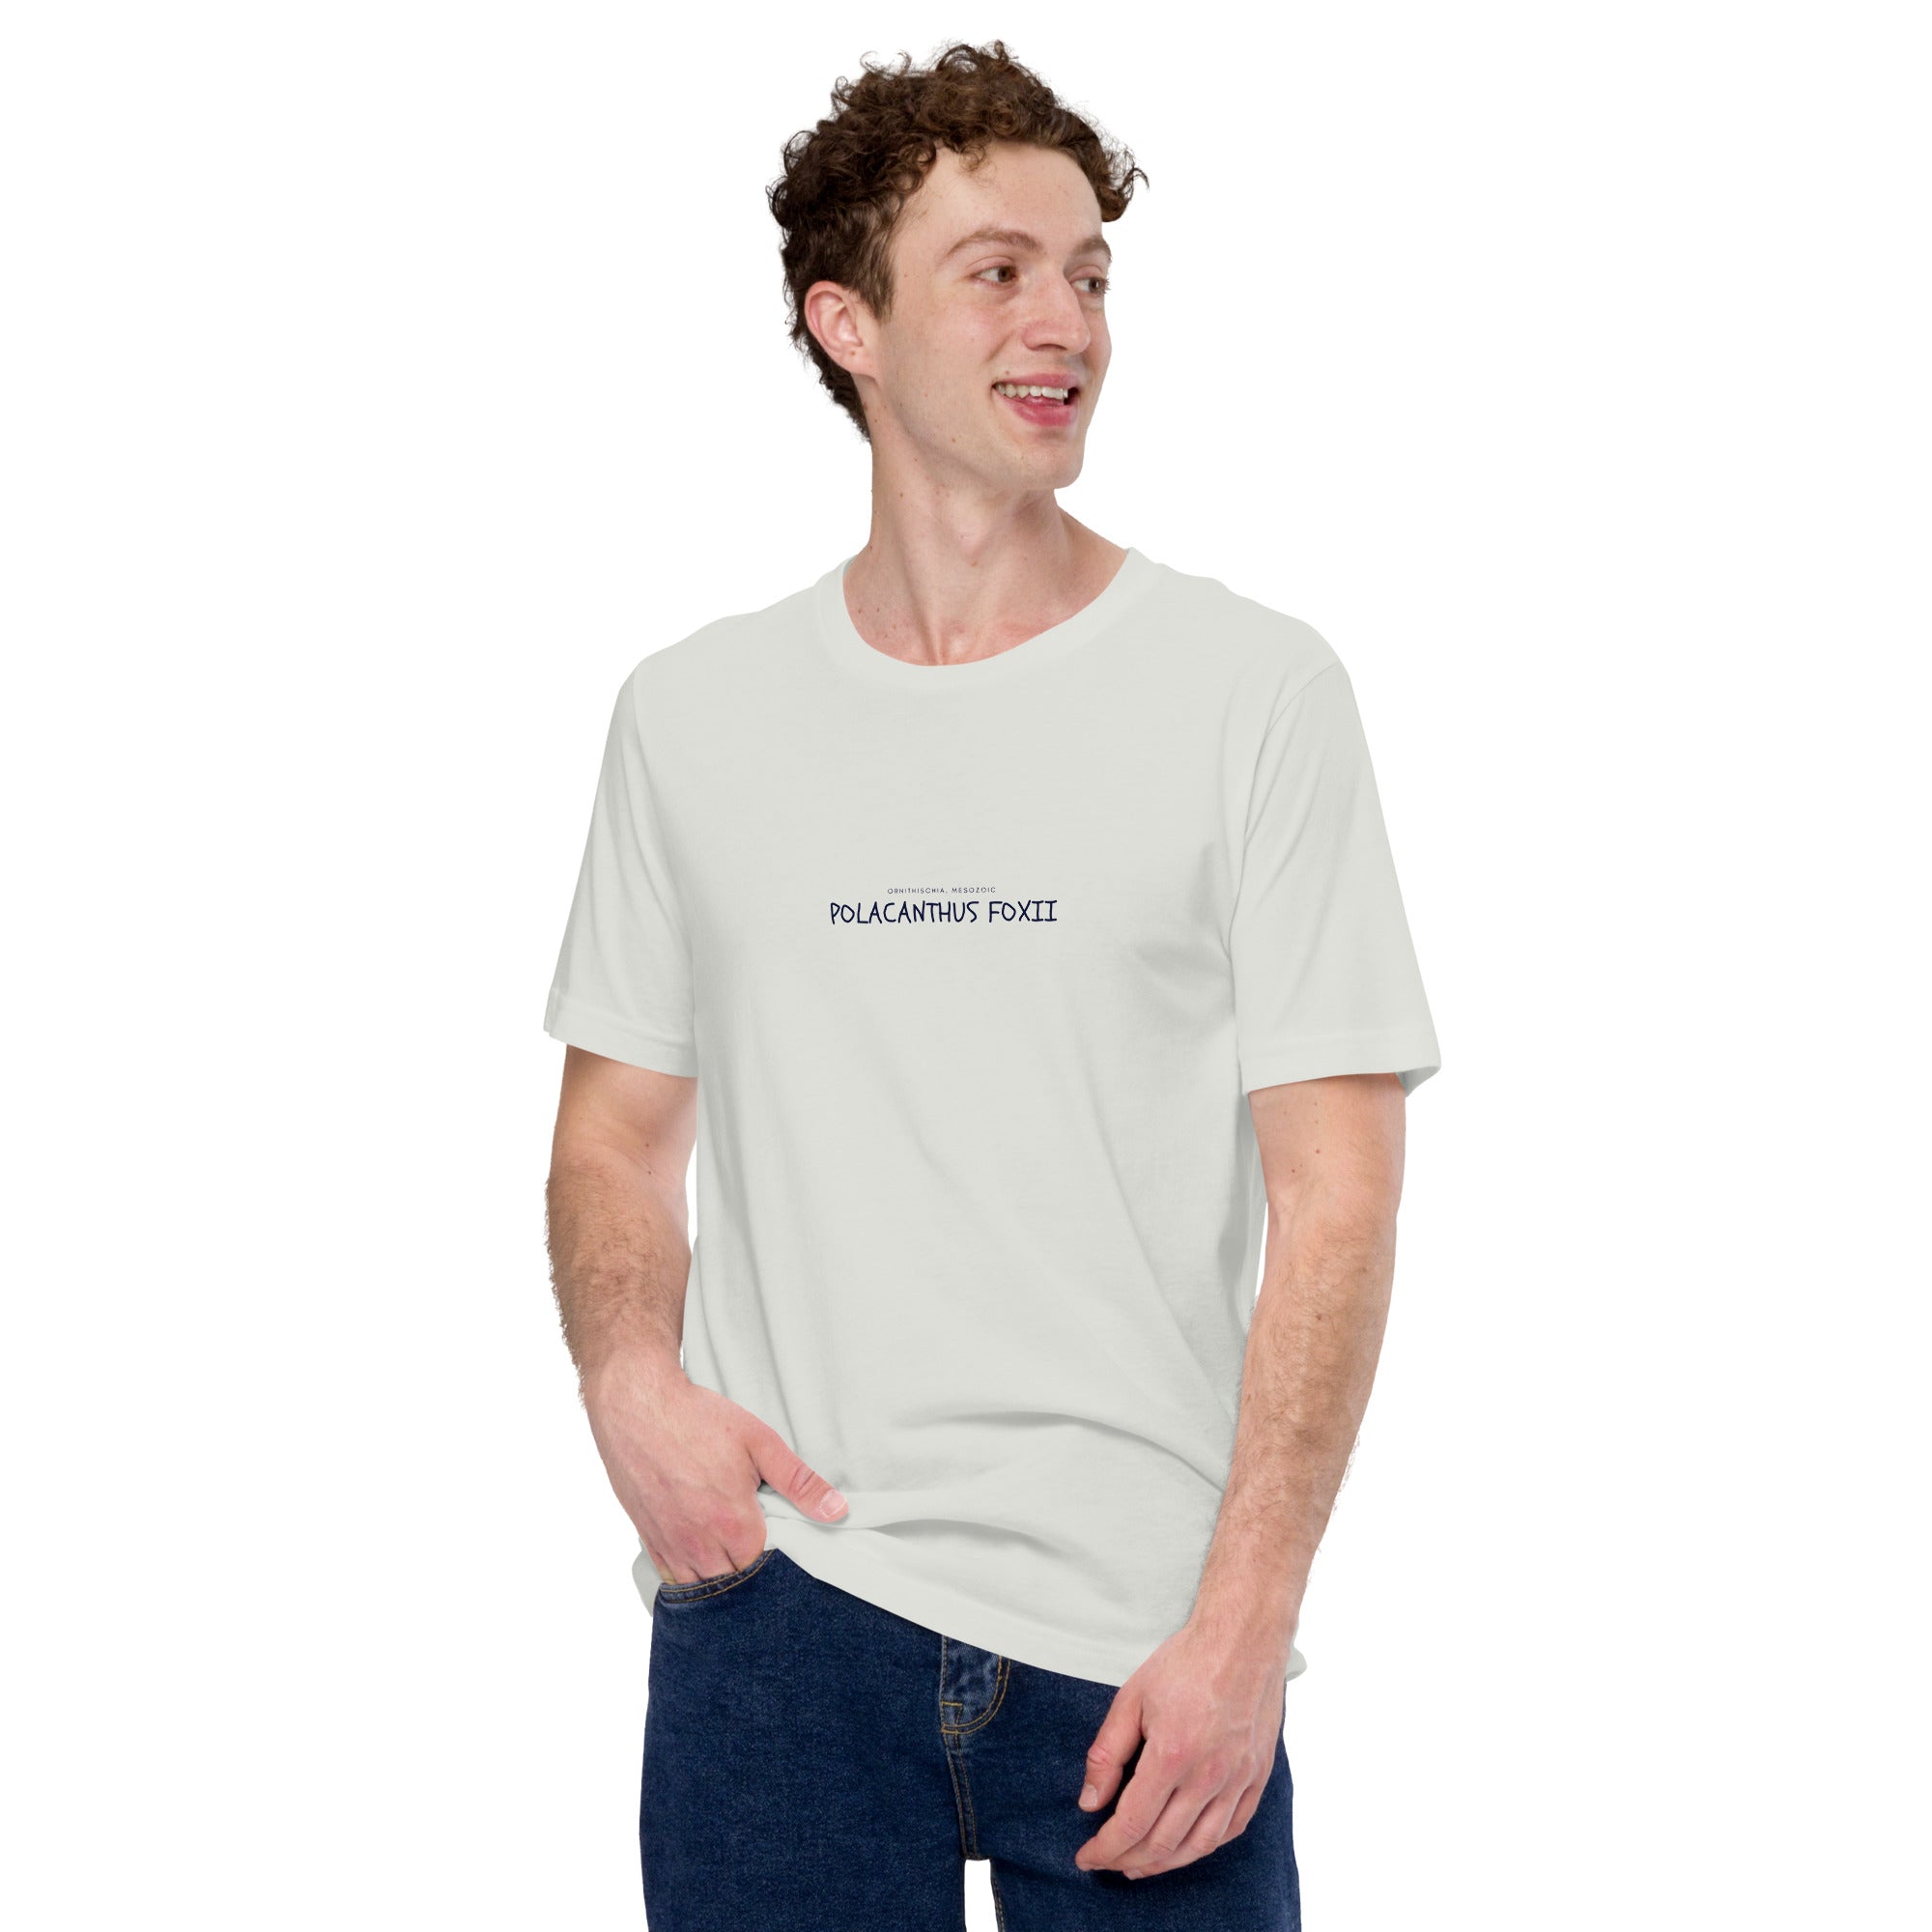 Camiseta unisex con texto "Polacanthus foxii"